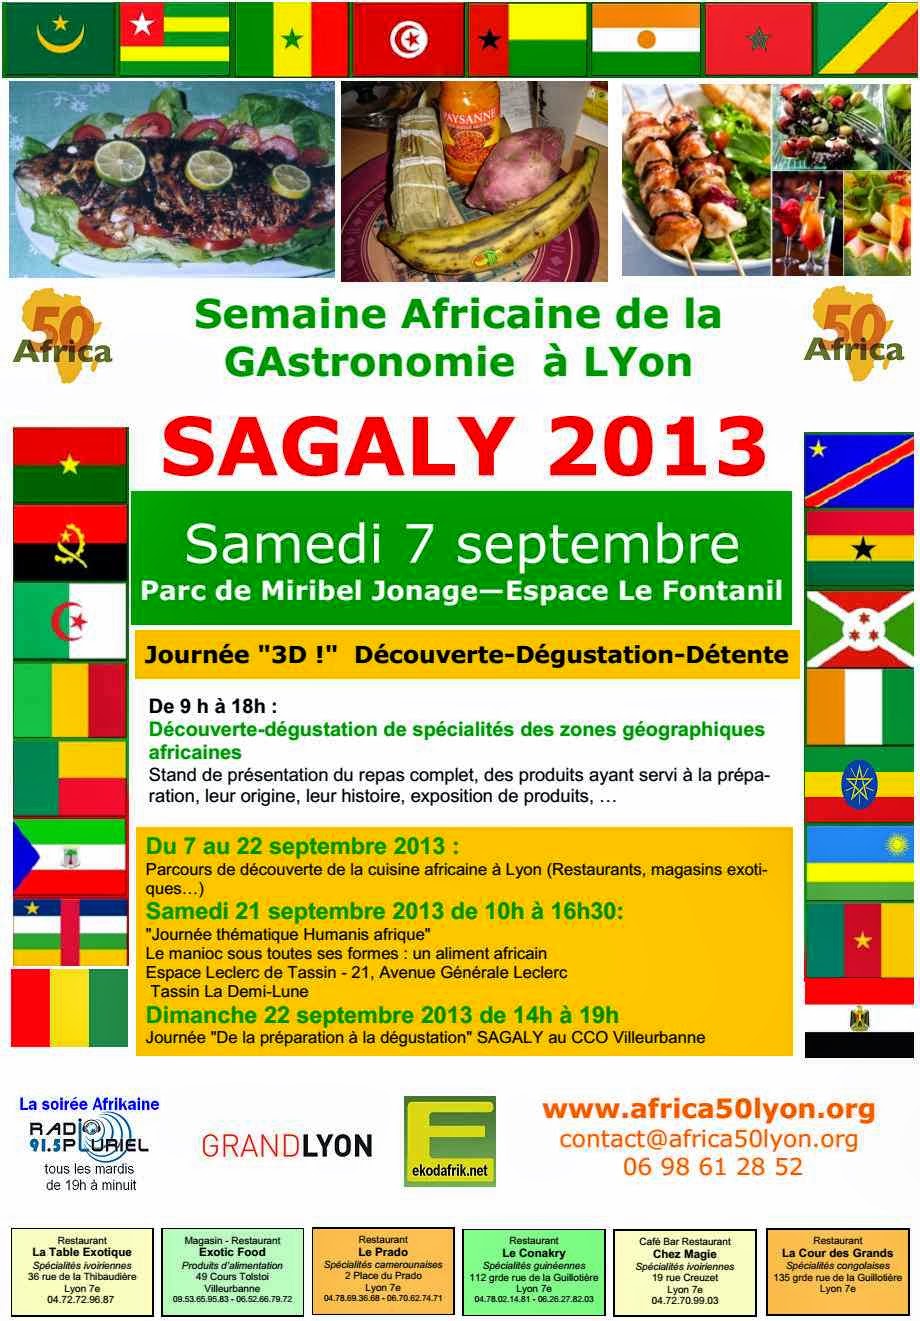 Semaine Africaine de la Gastronomie à Lyon – SAGALY 2013